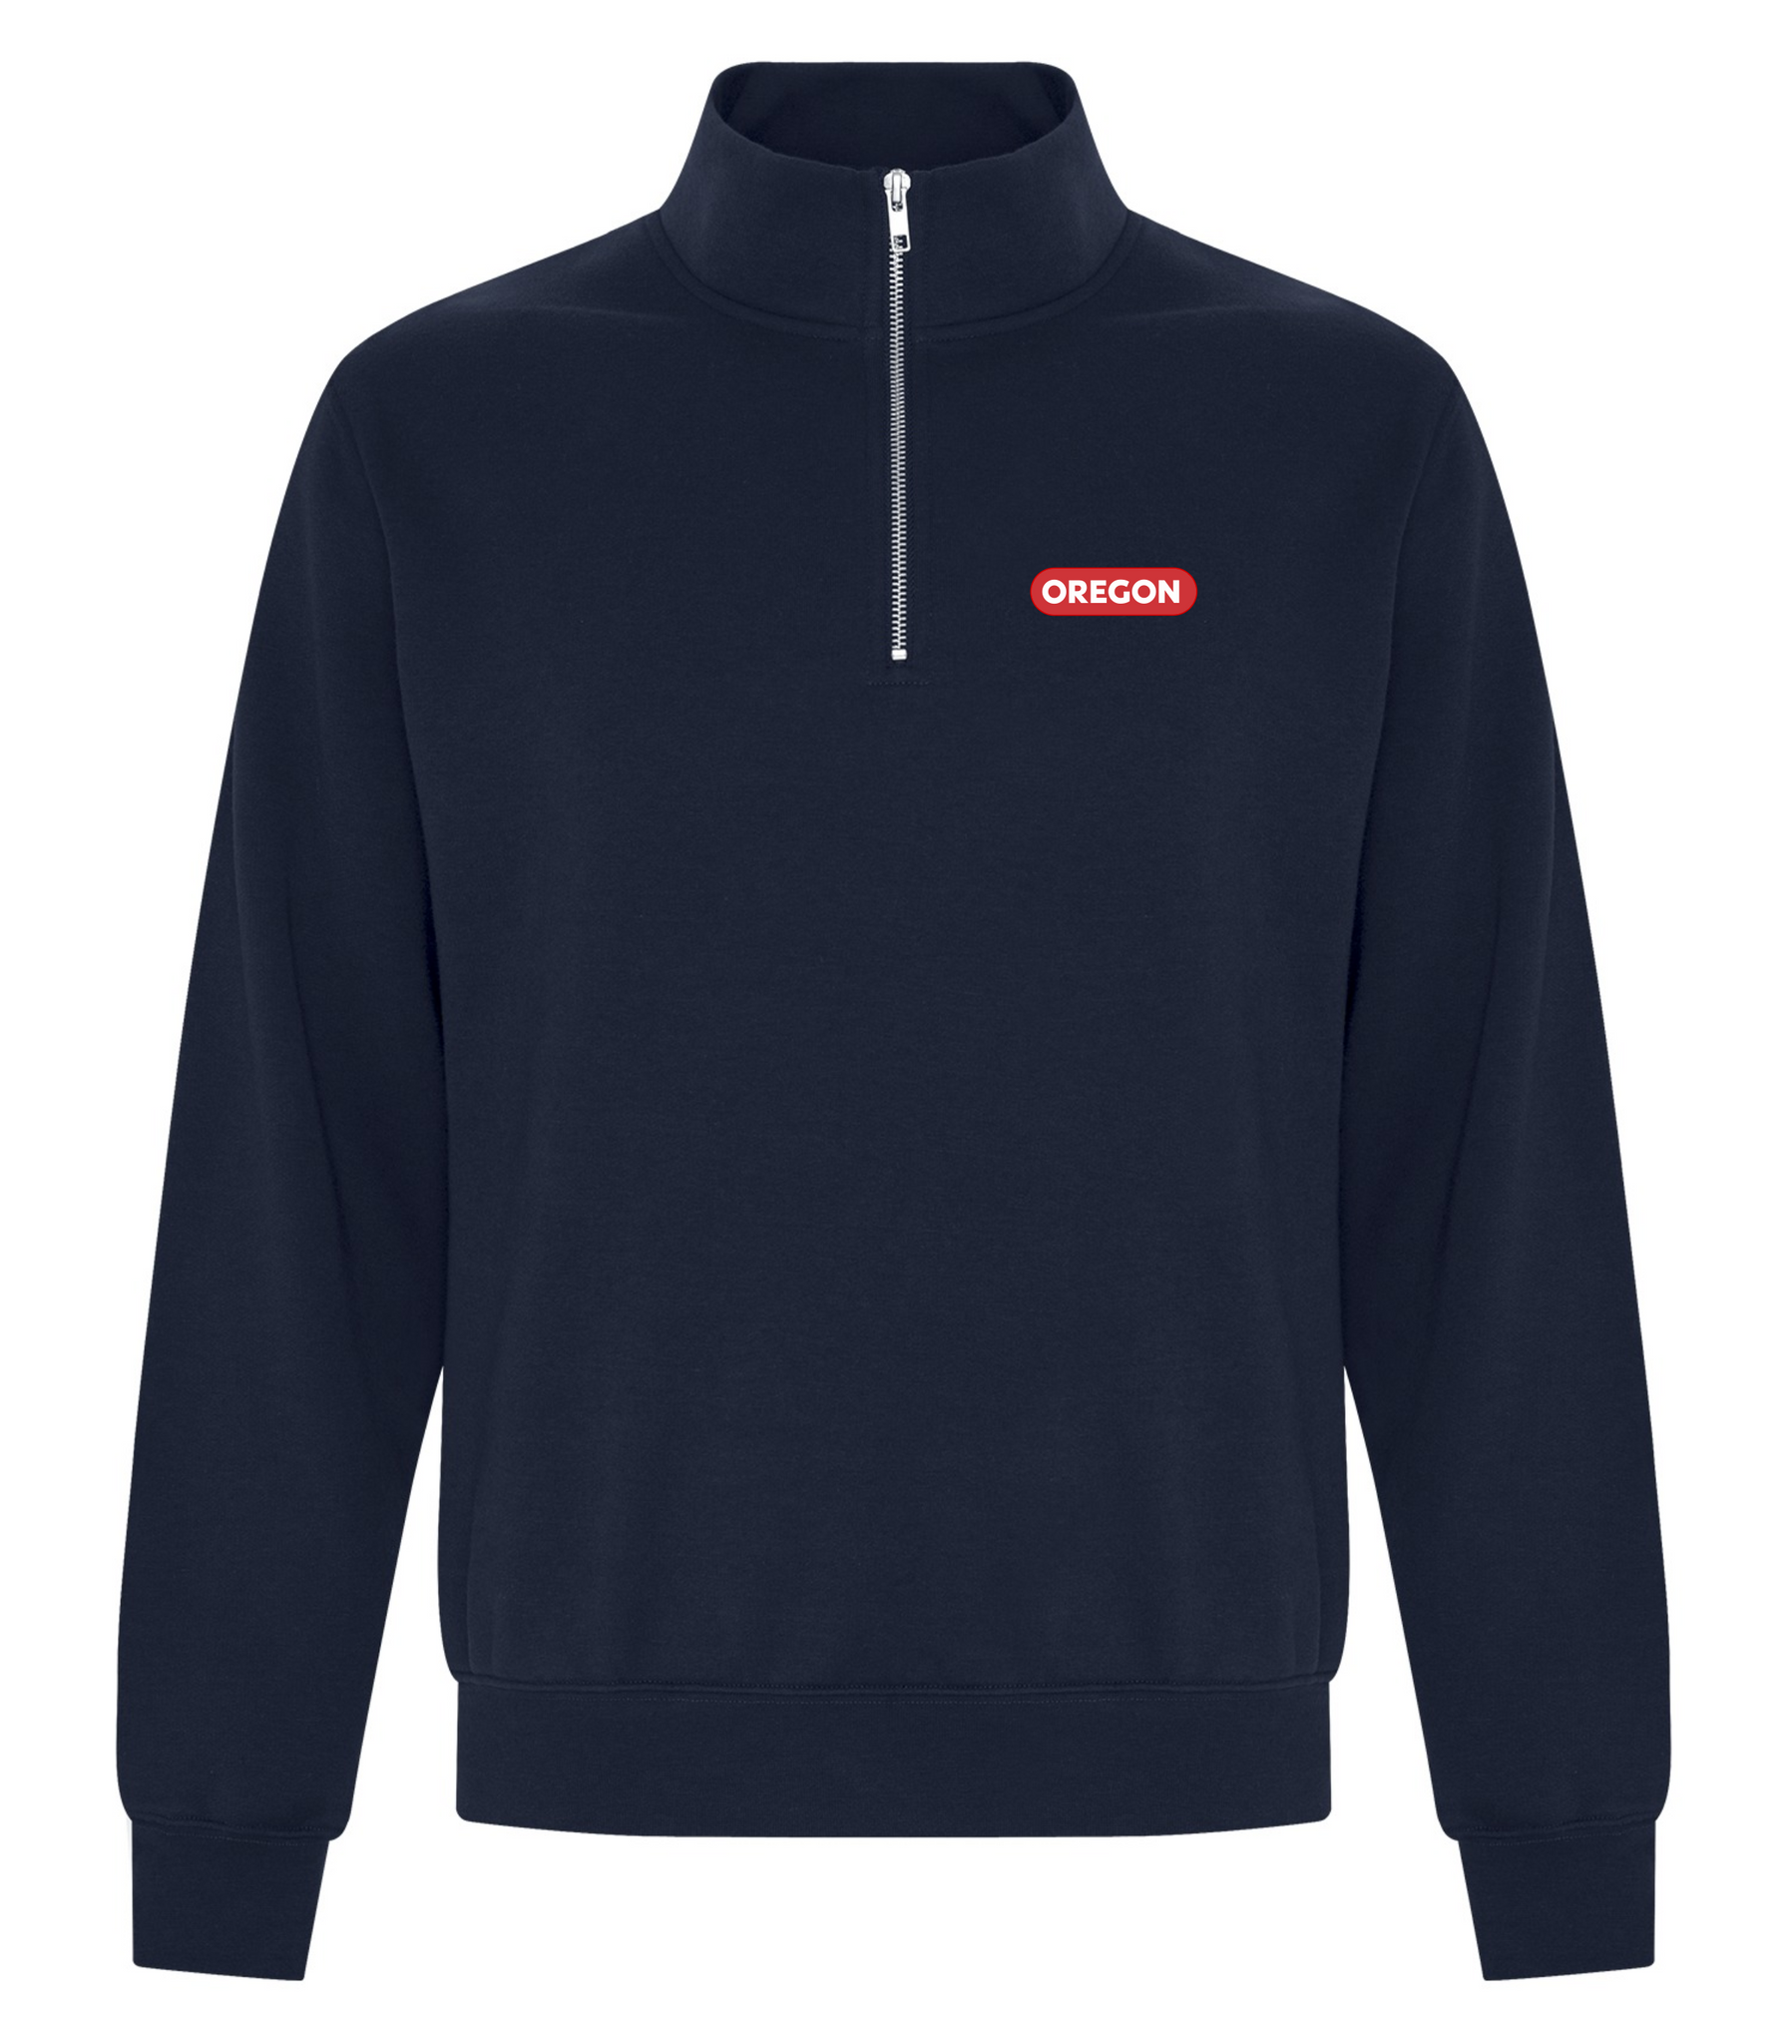 Unisex 1/4 Zip Fleece Sweatshirt – Oregon Clothing Program Website